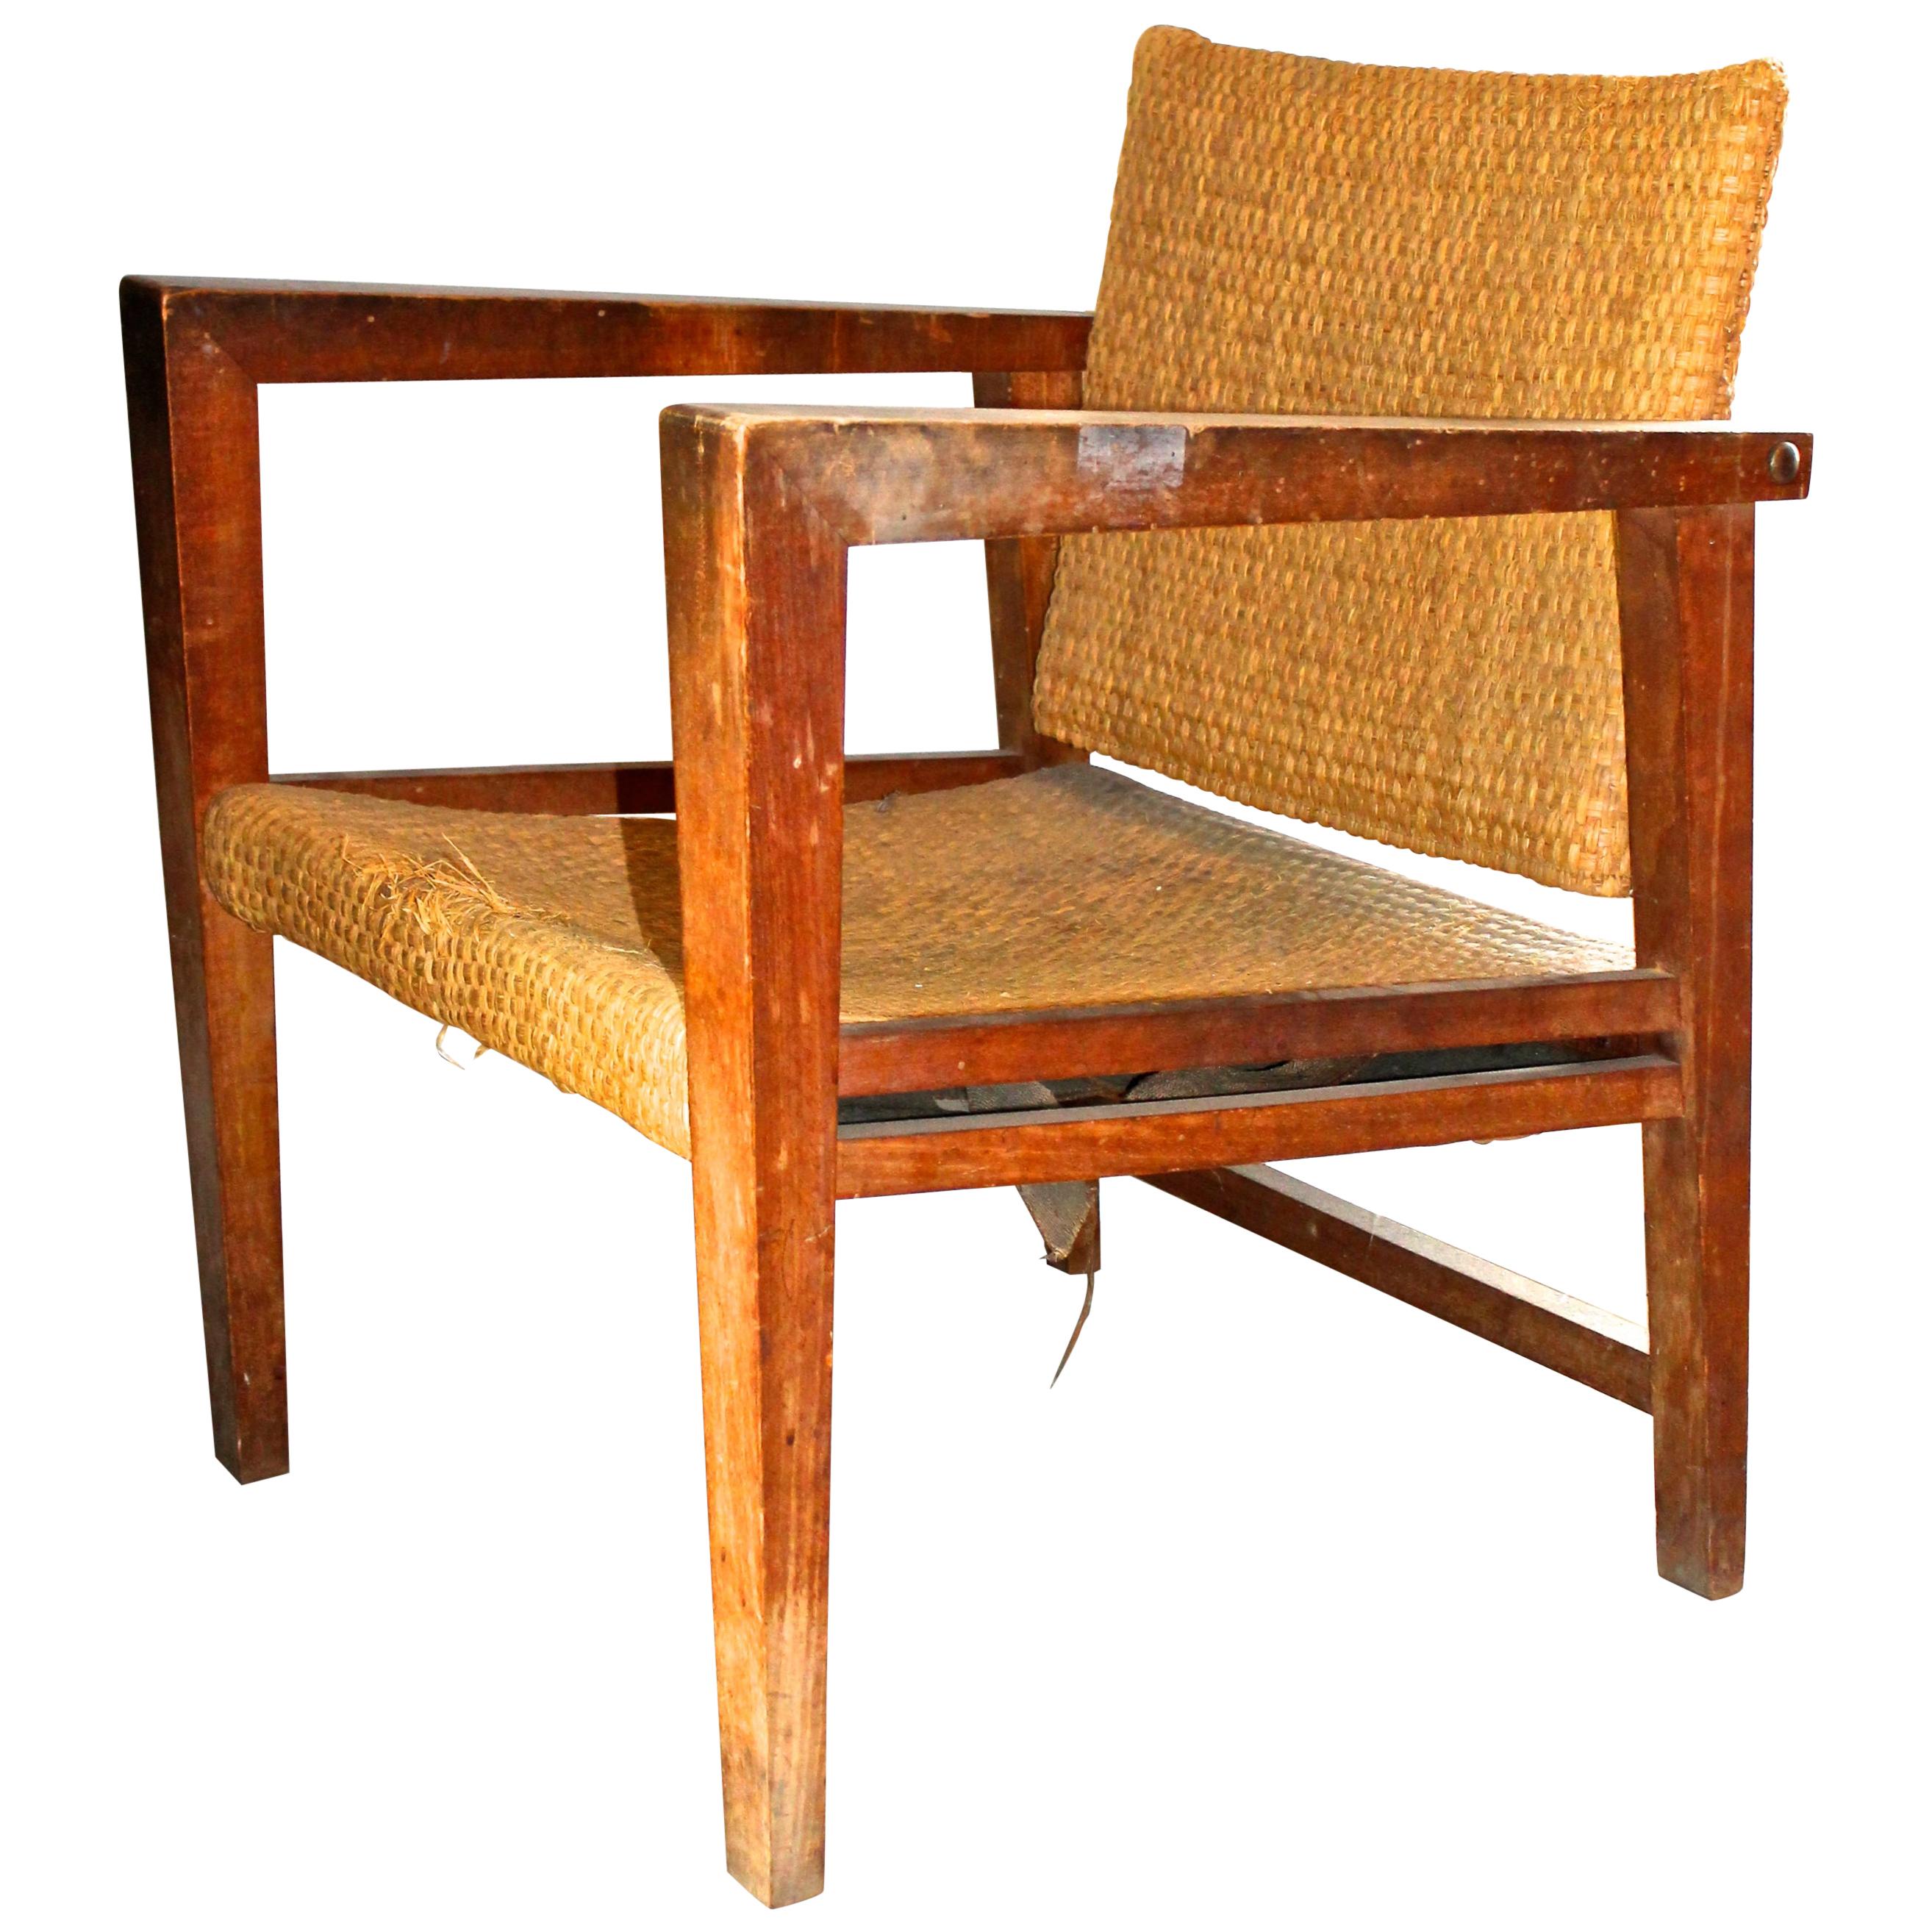 Ein bedeutender Stuhl aus geflochtenem Stroh, wahrscheinlich aus Bergahorn gefertigt. Der Rücken schwingt und verbindet sich in 'Basculant'-Manier.